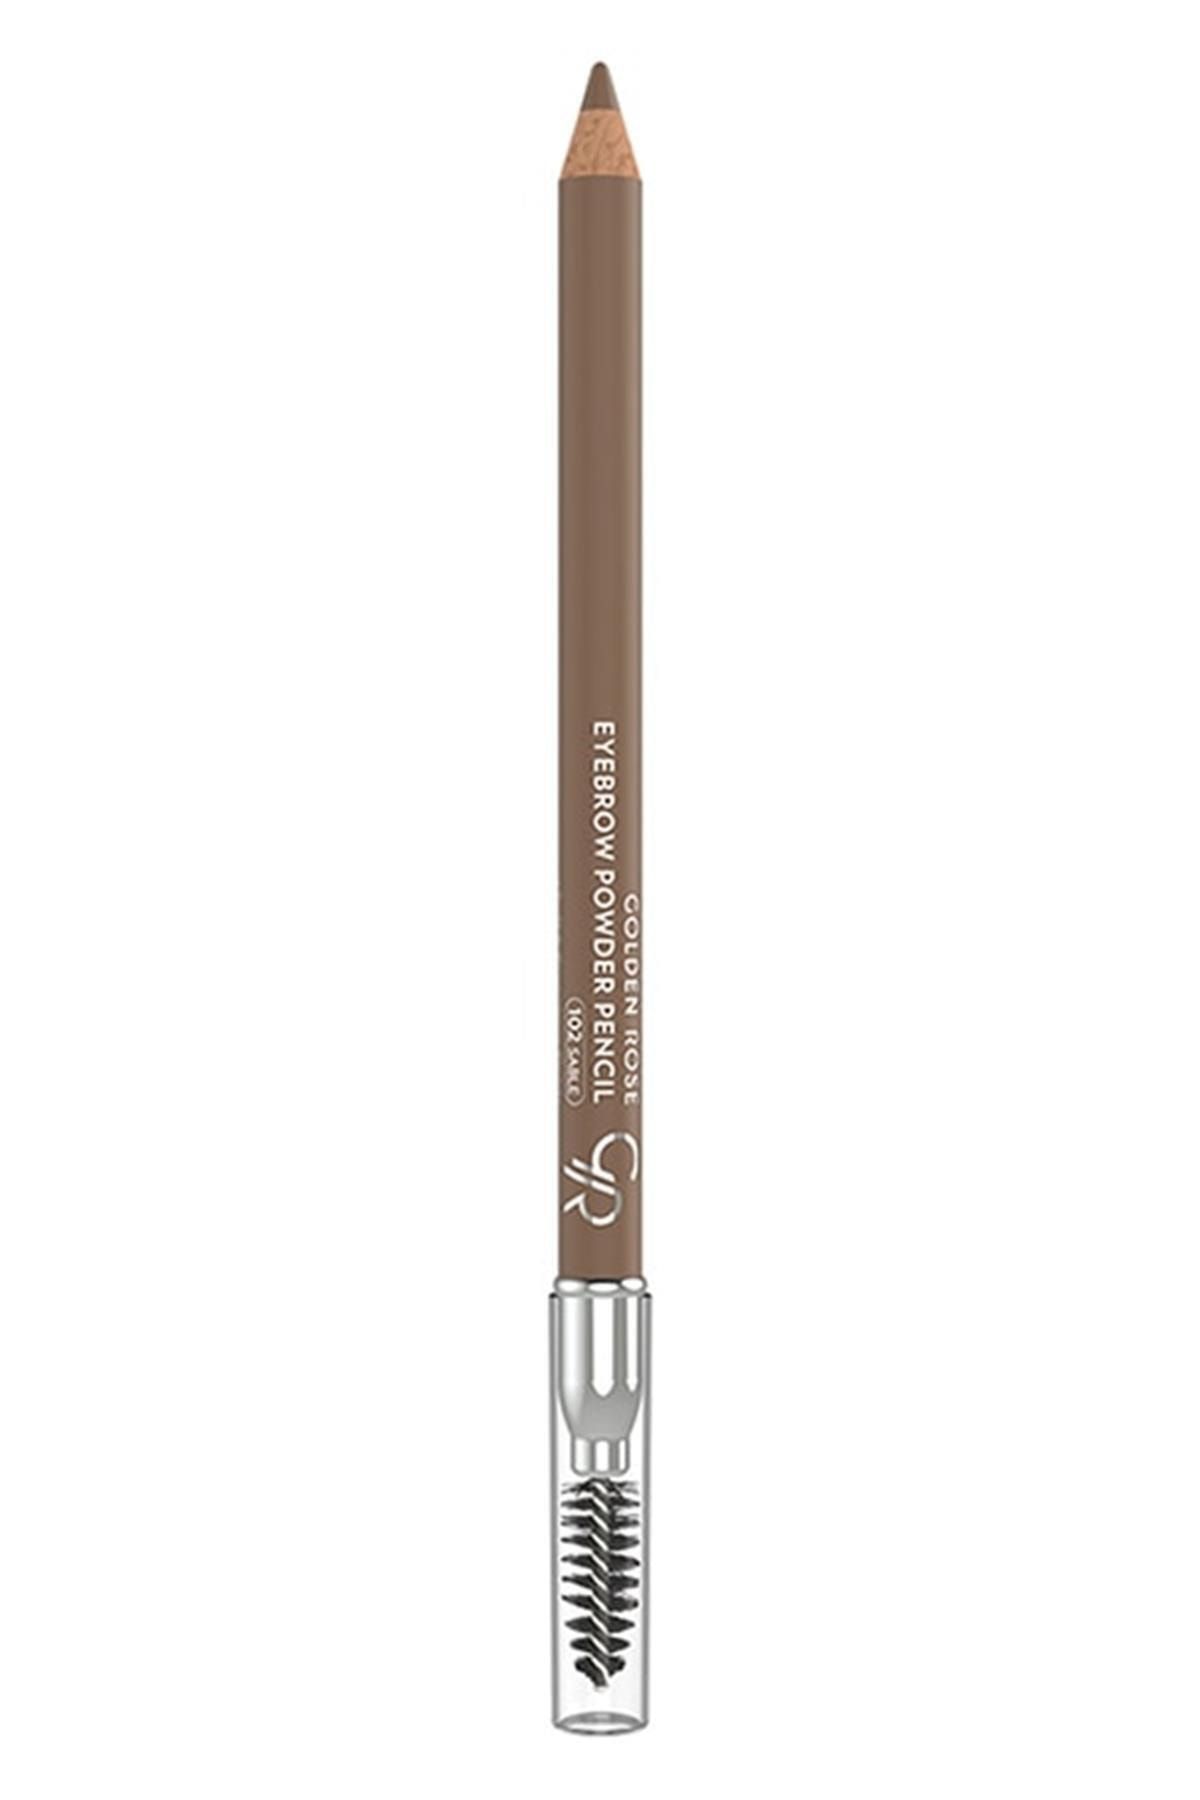 Golden Rose Marka: Eyebrow Powder Pencil Kaş Kalemi 102 Sable Kategori: Göz Kalemi